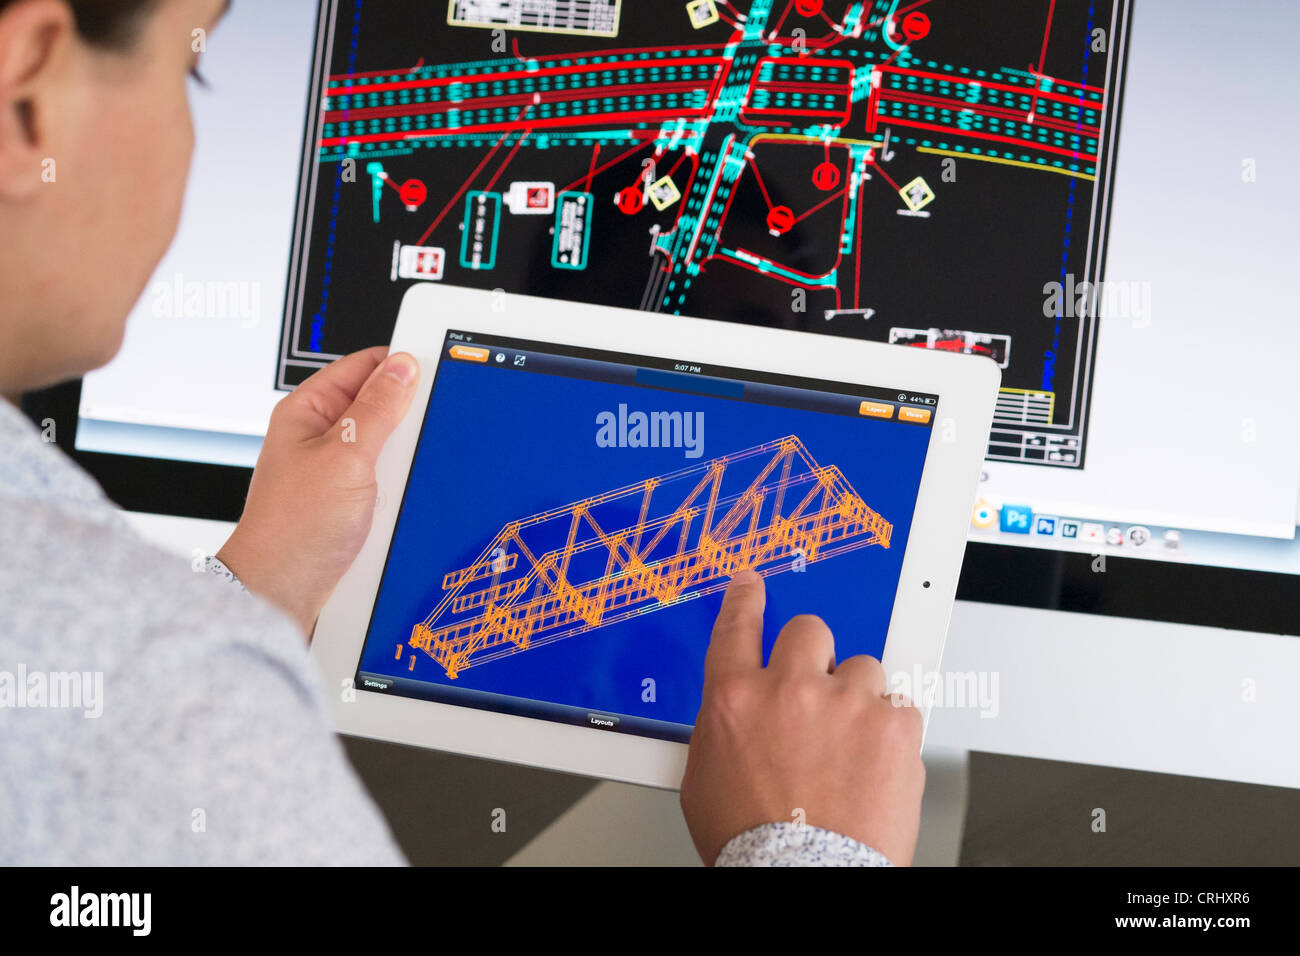 L'utilisation de l'iPad ingénieur CAD application de conception assistée par ordinateur au modèle 3D Design d'un nouveau pont Banque D'Images